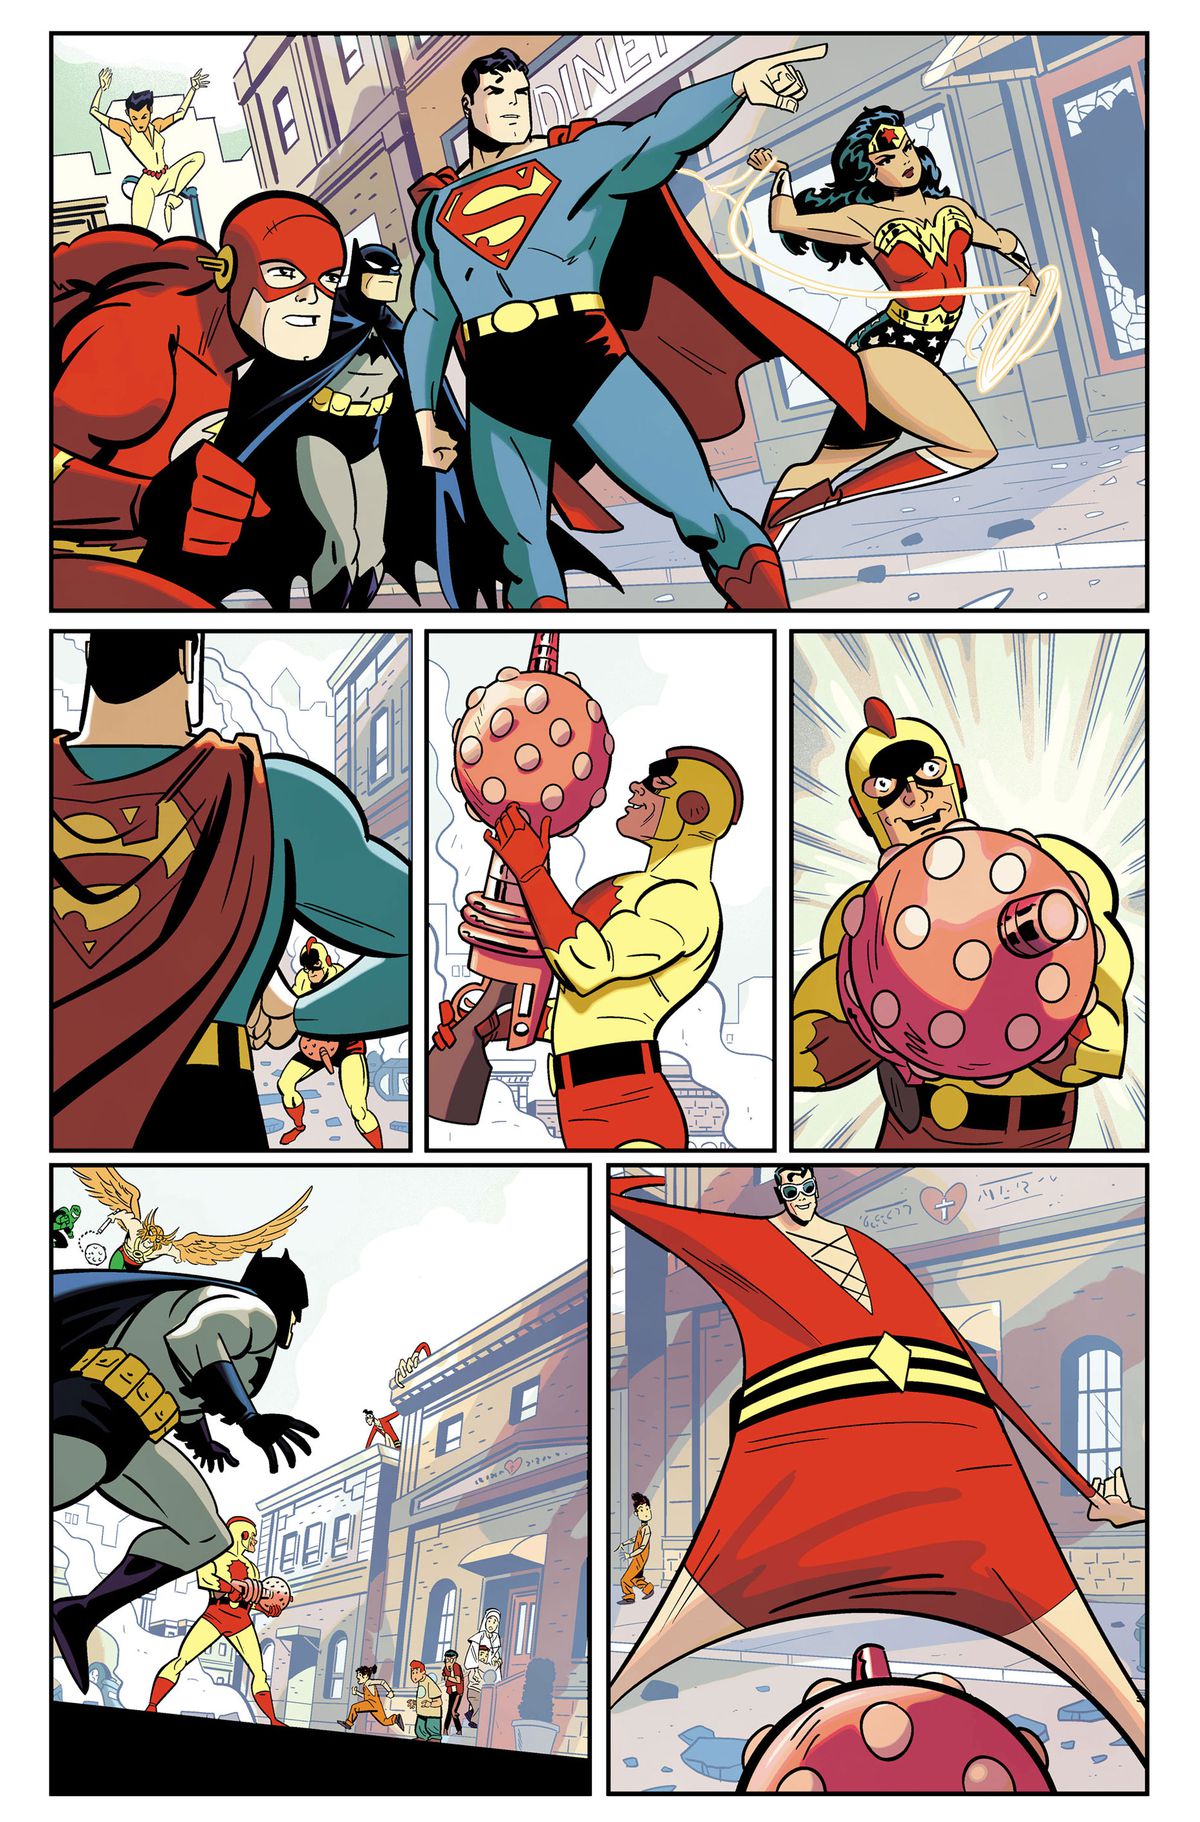 La Justice League se rassemble pour combattre un méchant en costume jaune avec un gros pistolet orbe et Plastic Man qui s'étire pour l'arrêter.